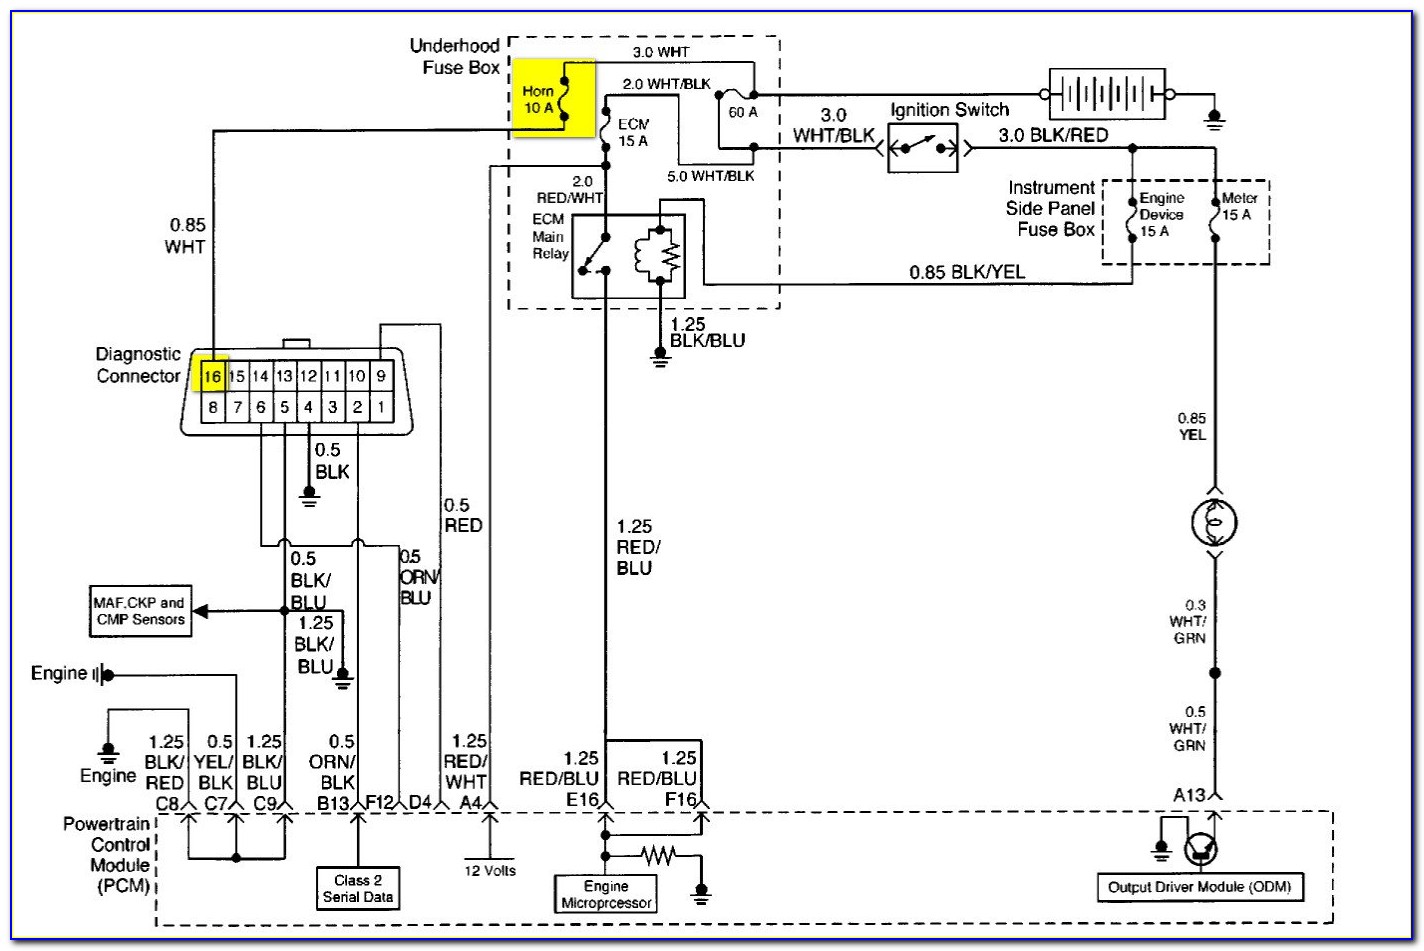 Obd2 Port Wiring Diagram